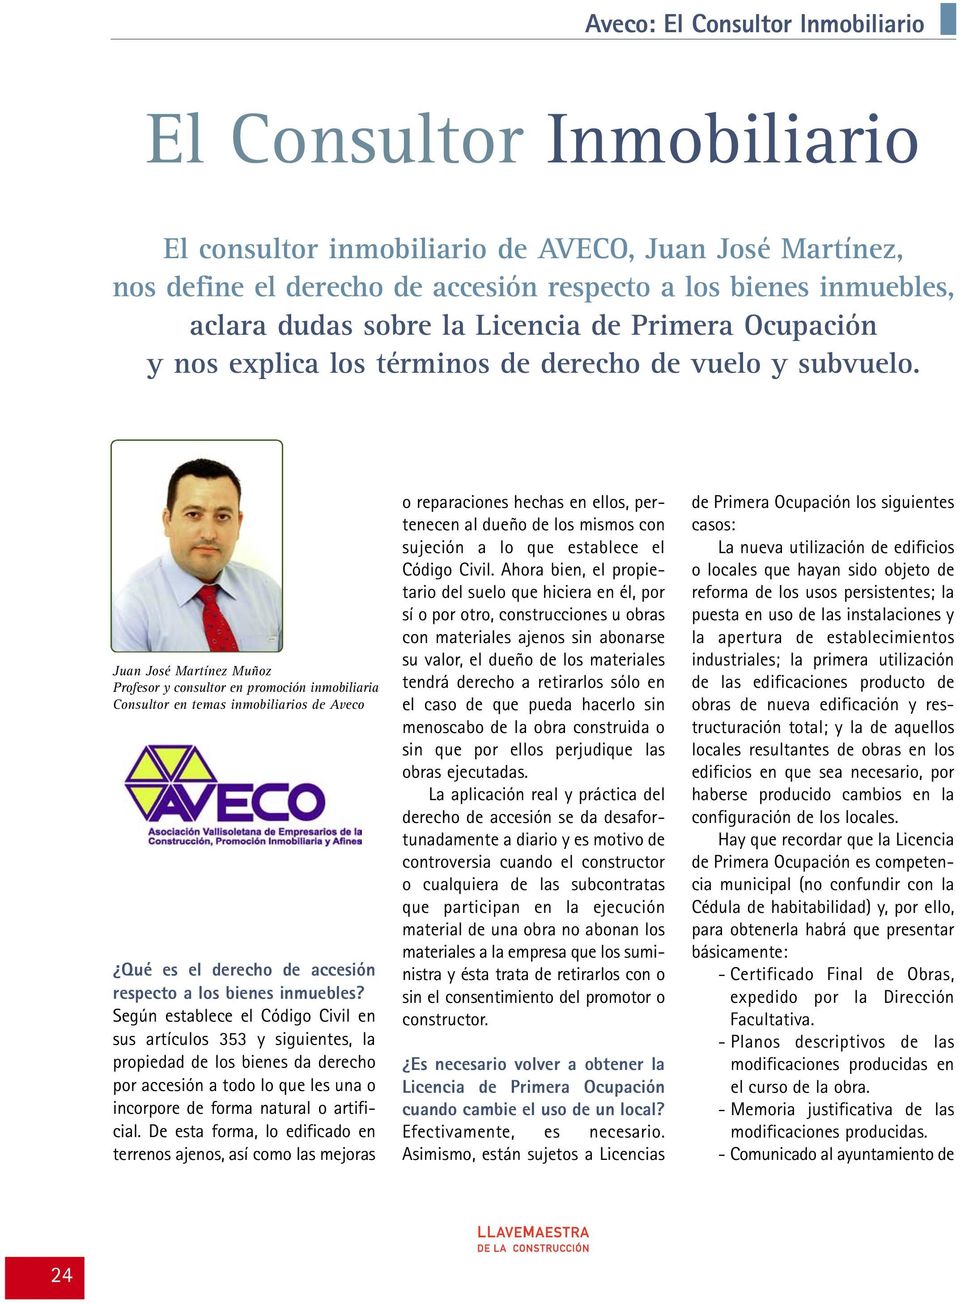 Juan José Martínez Muñoz Profesor y consultor en promoción inmobiliaria Consultor en temas inmobiliarios de Aveco Qué es el derecho de accesión respecto a los bienes inmuebles?